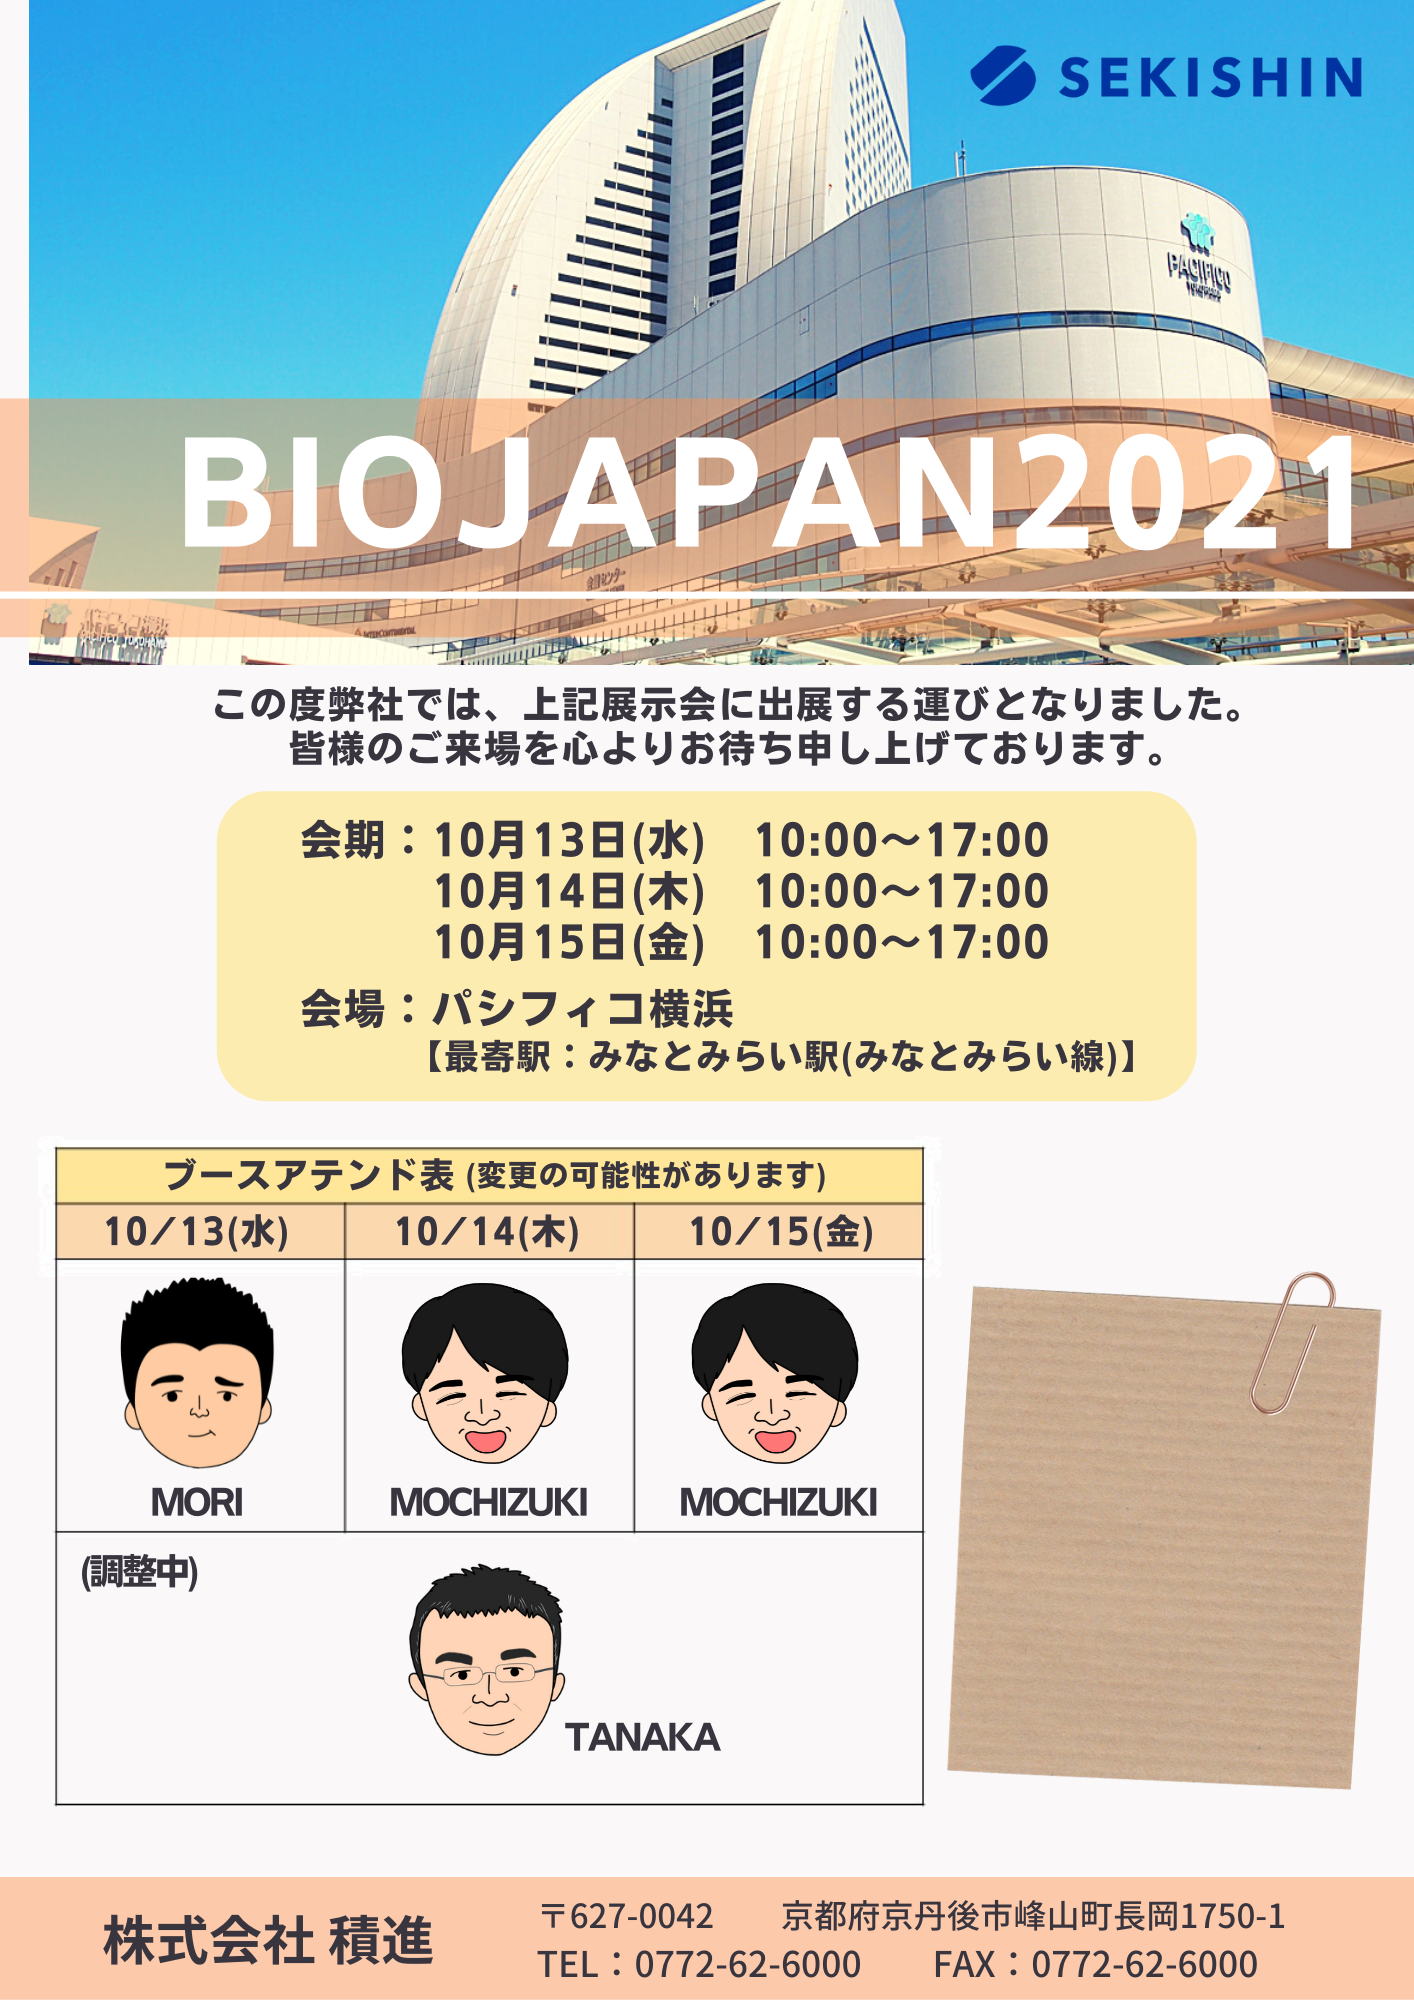 【出展情報】BioJapan2021に出展いたします！